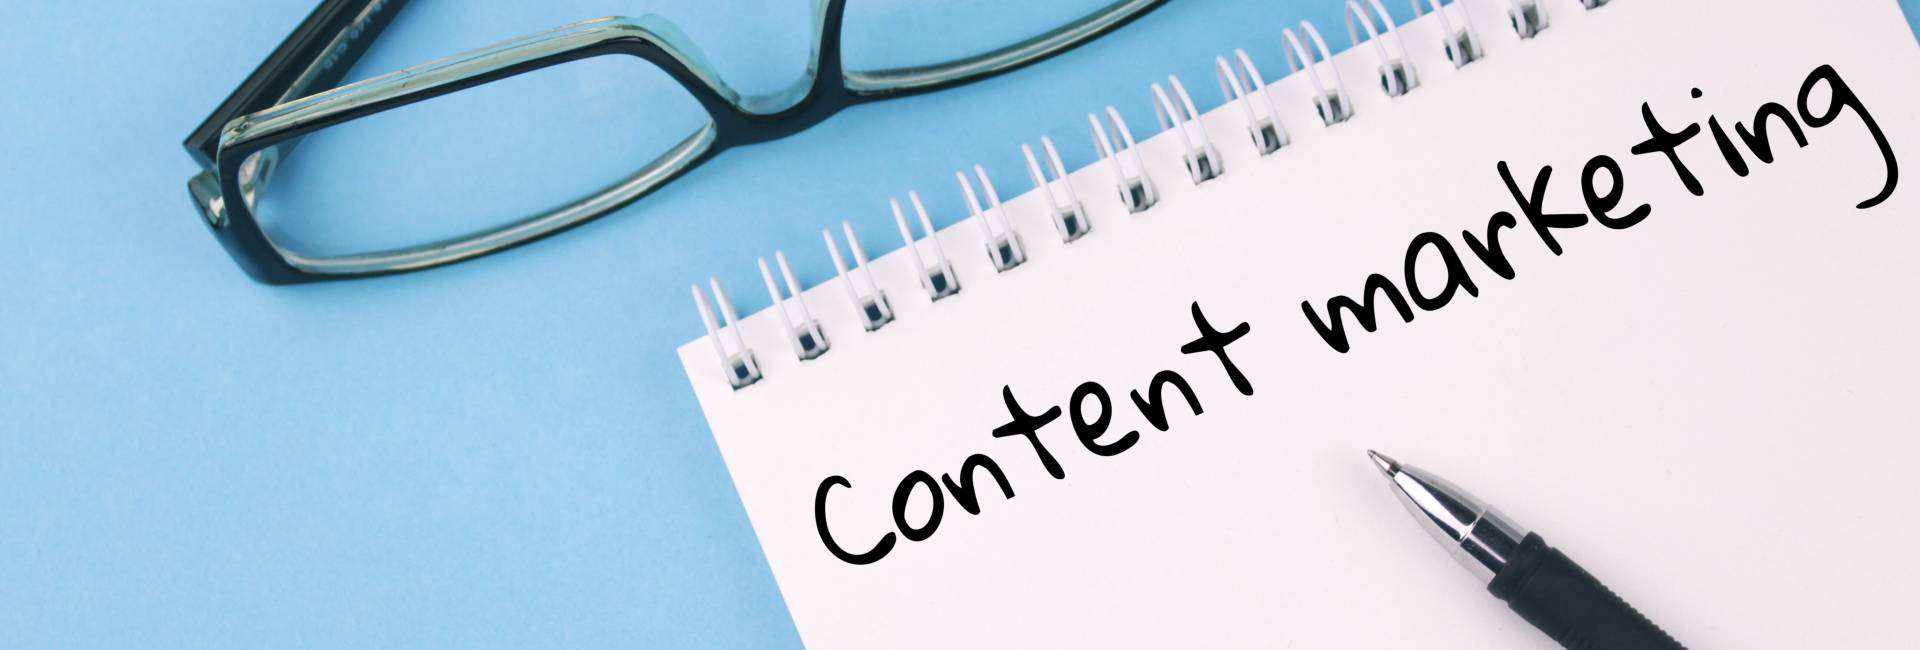 marketing conteúdo blog